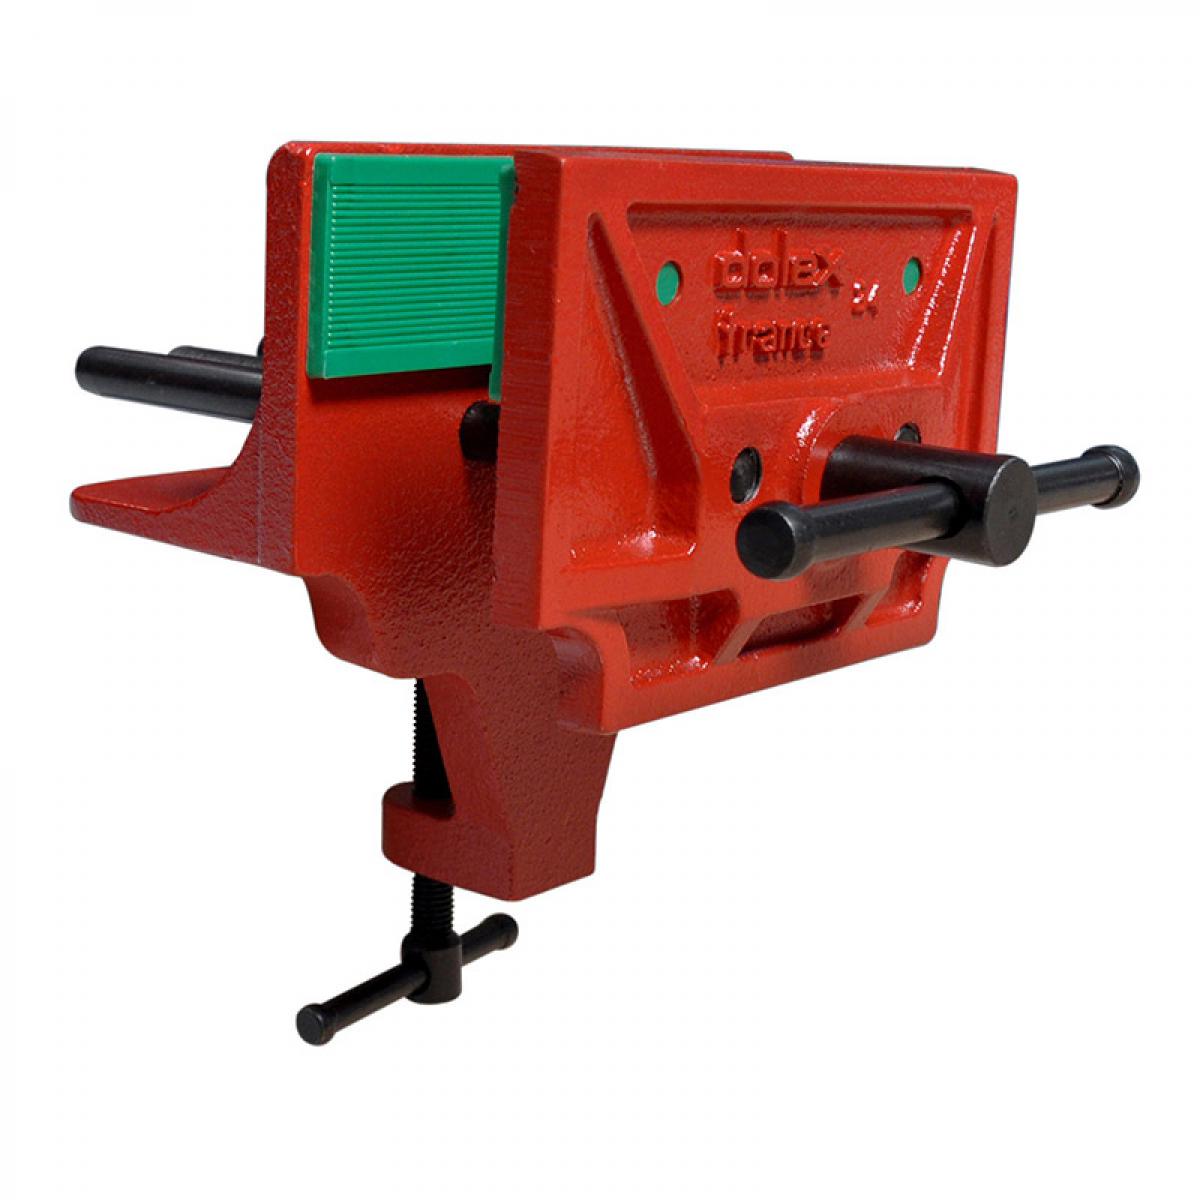 Dolex - Dolex - Etau presse de menuisier serrage 150 x 40 mm - Enclumes, étaux